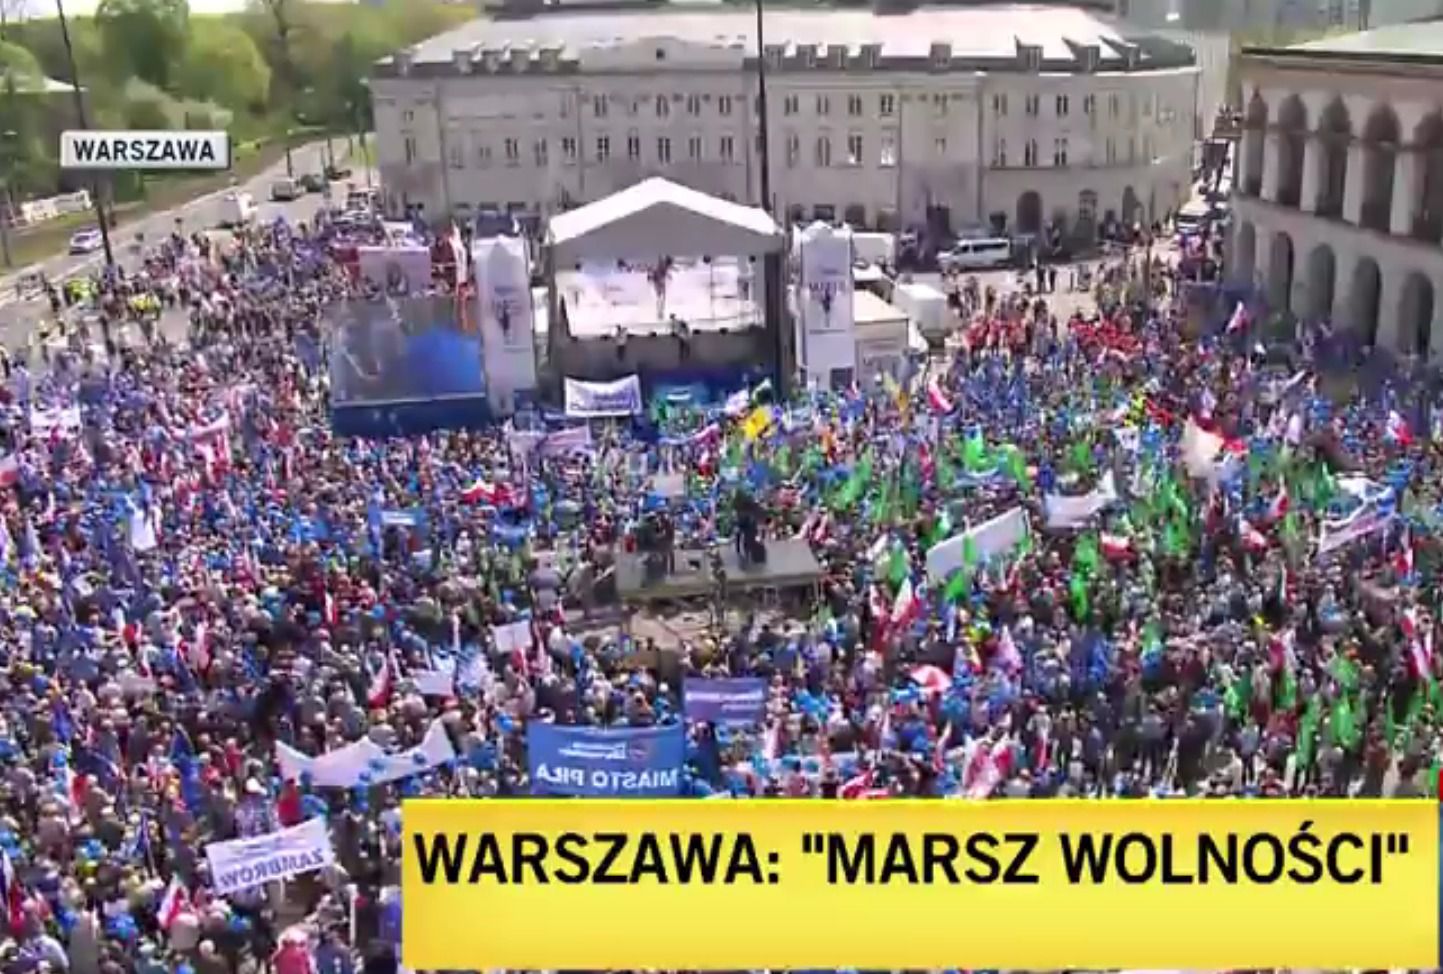 У Варшаві десятки тисяч людей вийшли на антиурядовий "Марш свободи"(фото). У столиці Польщі Варшаві в суботу, 6 травня, десятки тисяч громадян вийшли на "Марш свободи", щоб висловити свою незгоду з діями уряду. 